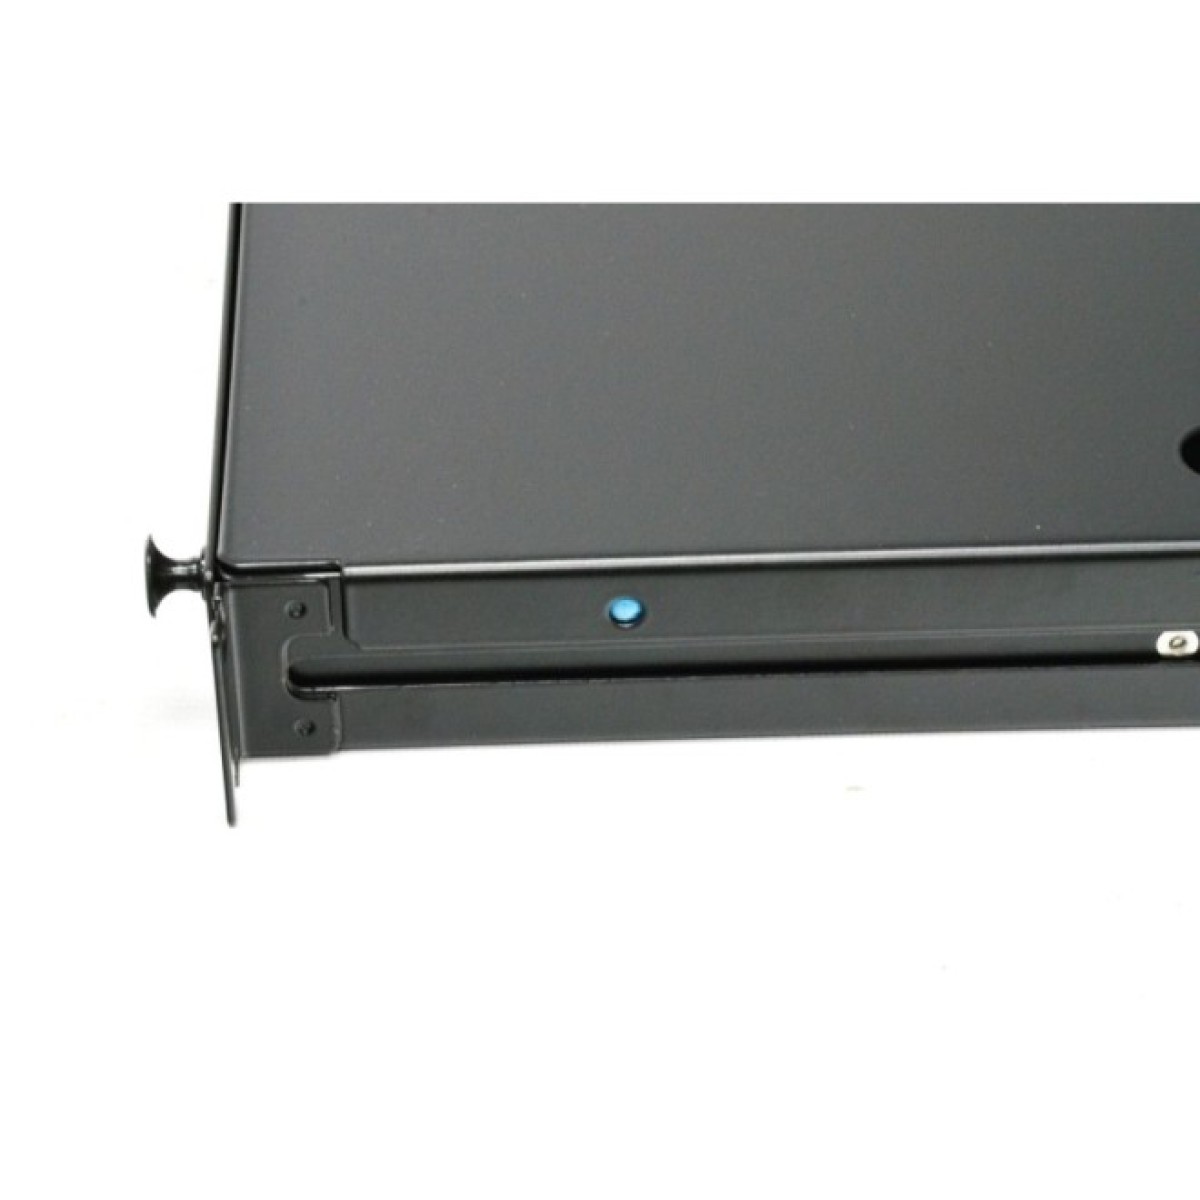 ВО патч-панель LAN1 с 6xLC Duplex Адапт., 12 пигтейл., Сплайс-кассетой, SM, OS2, выдвижная, 1U, черная, Corning 98_98.jpg - фото 5